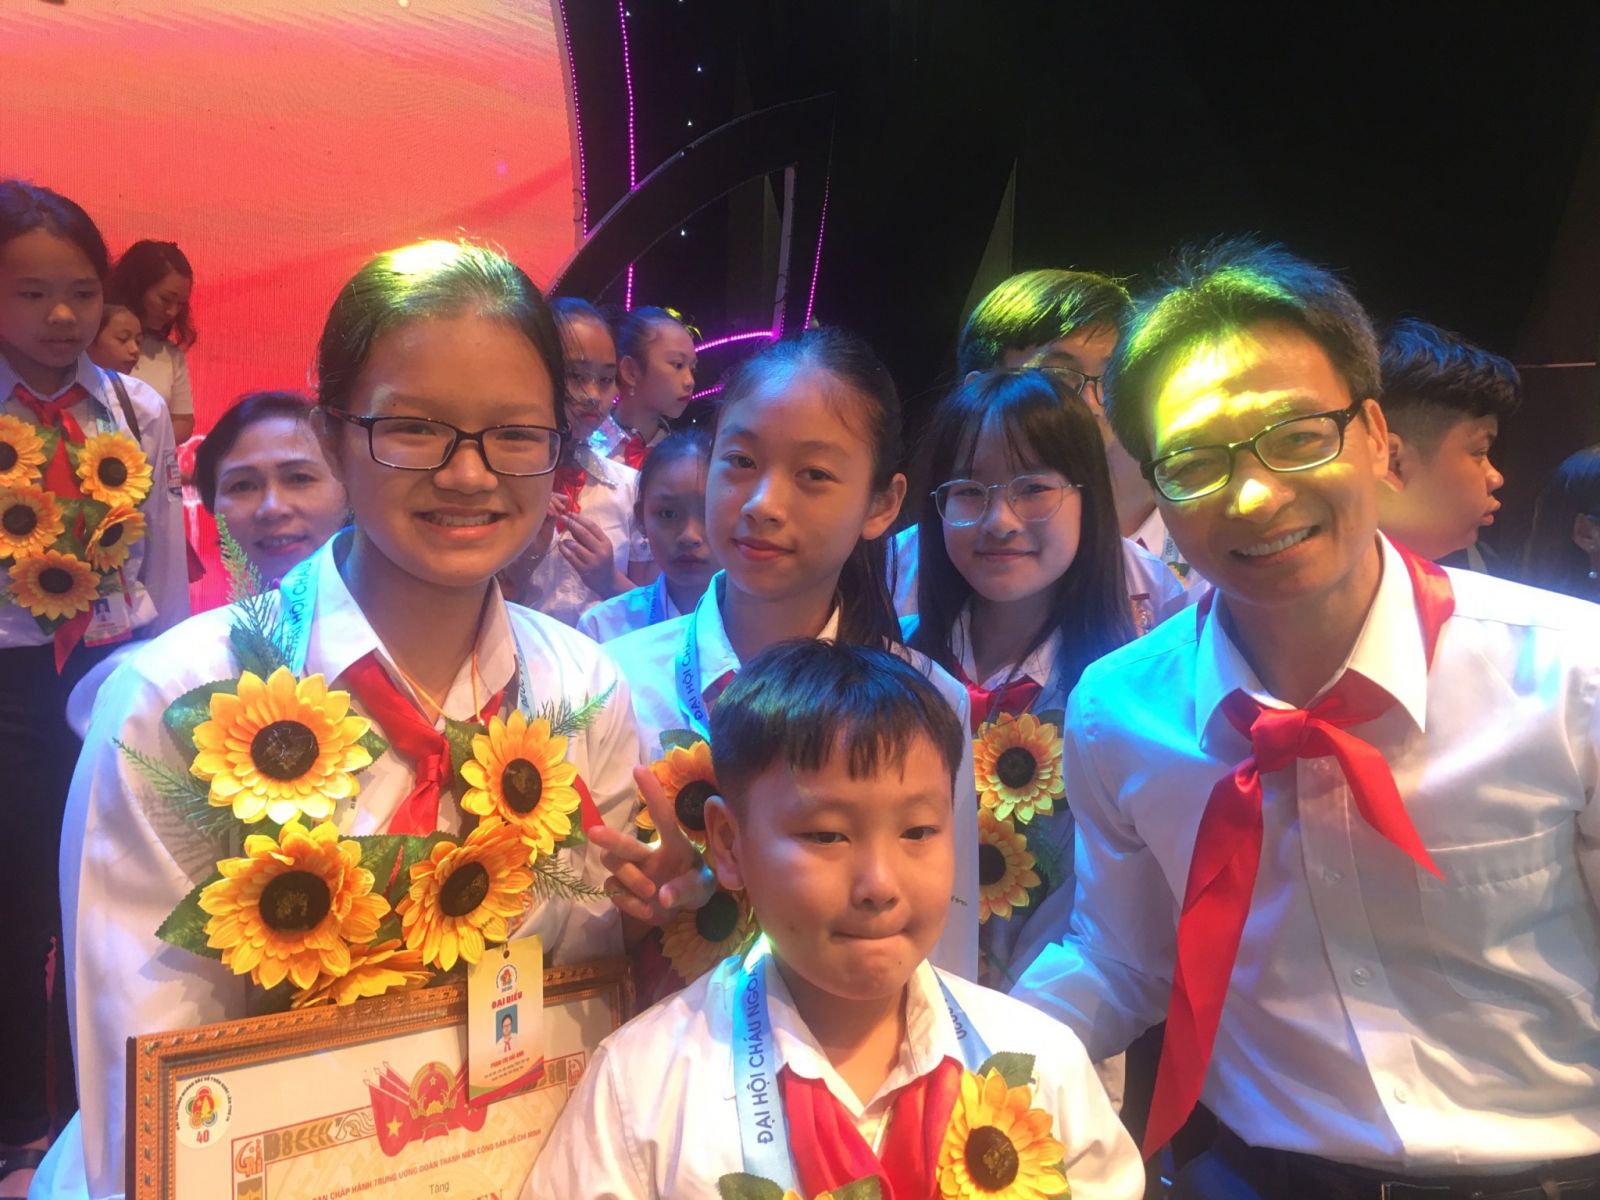 Em Phan Thị Hải Anh: lớp trưởng học giỏi, luôn giúp đỡ bạn bè xứng danh Cháu ngoan Bác Hồ